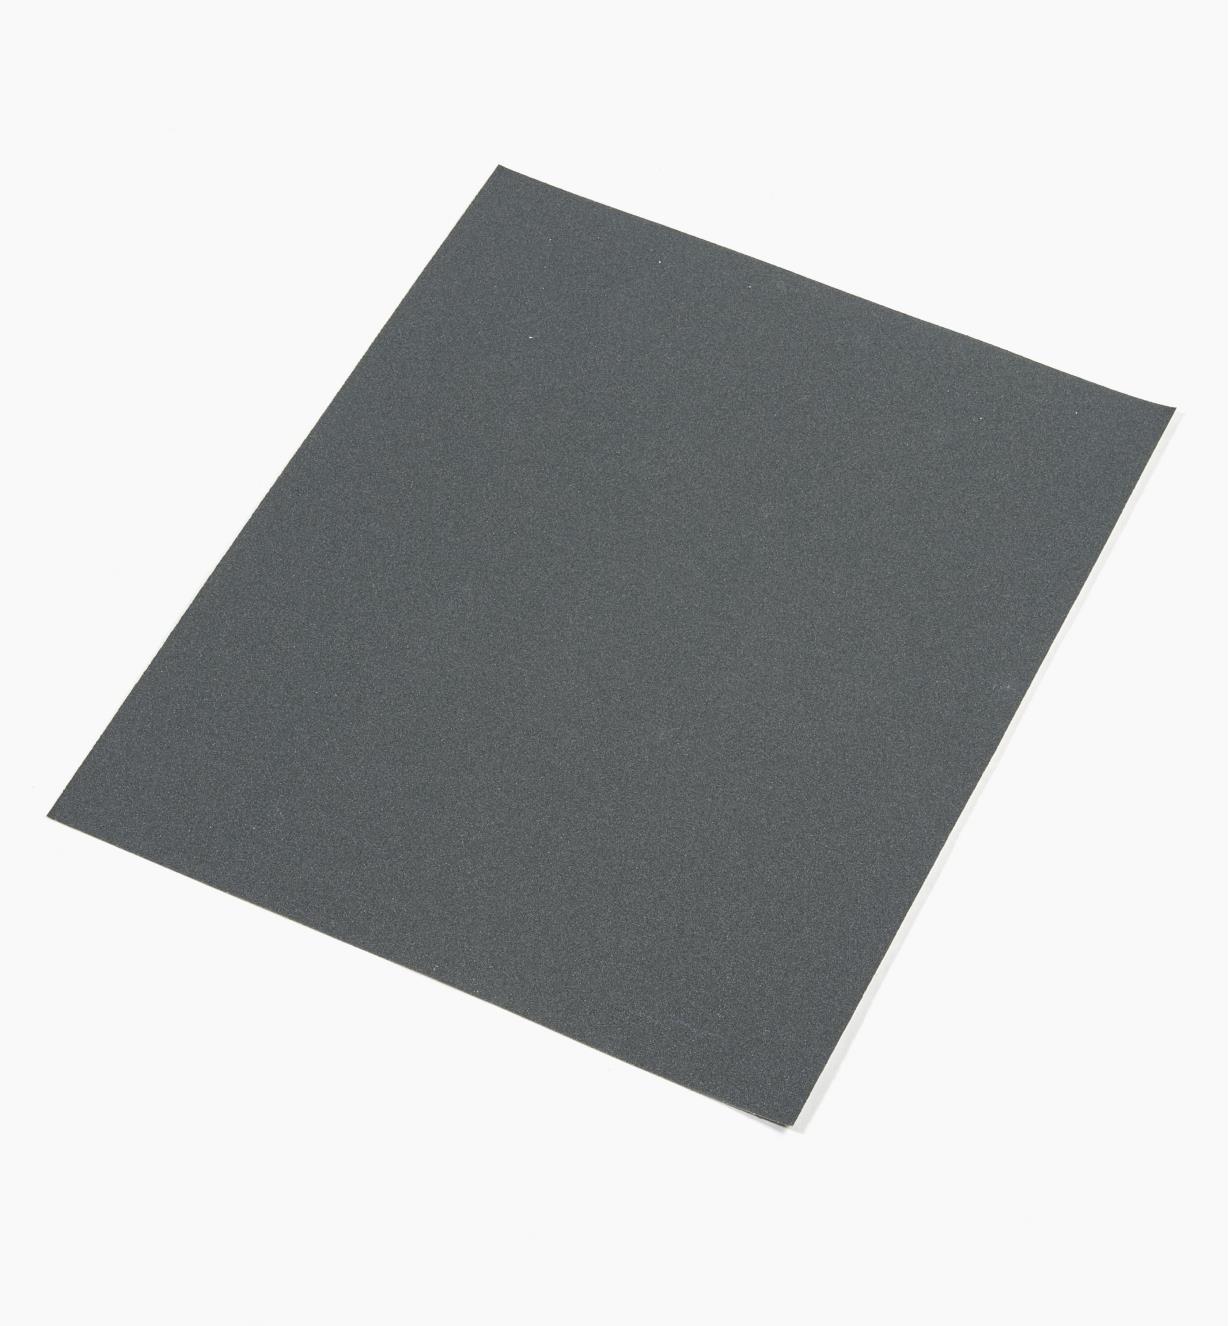 08K0176 - Papier abrasif pour ponçage à sec ou humide Mirka, grain 220, l'unité